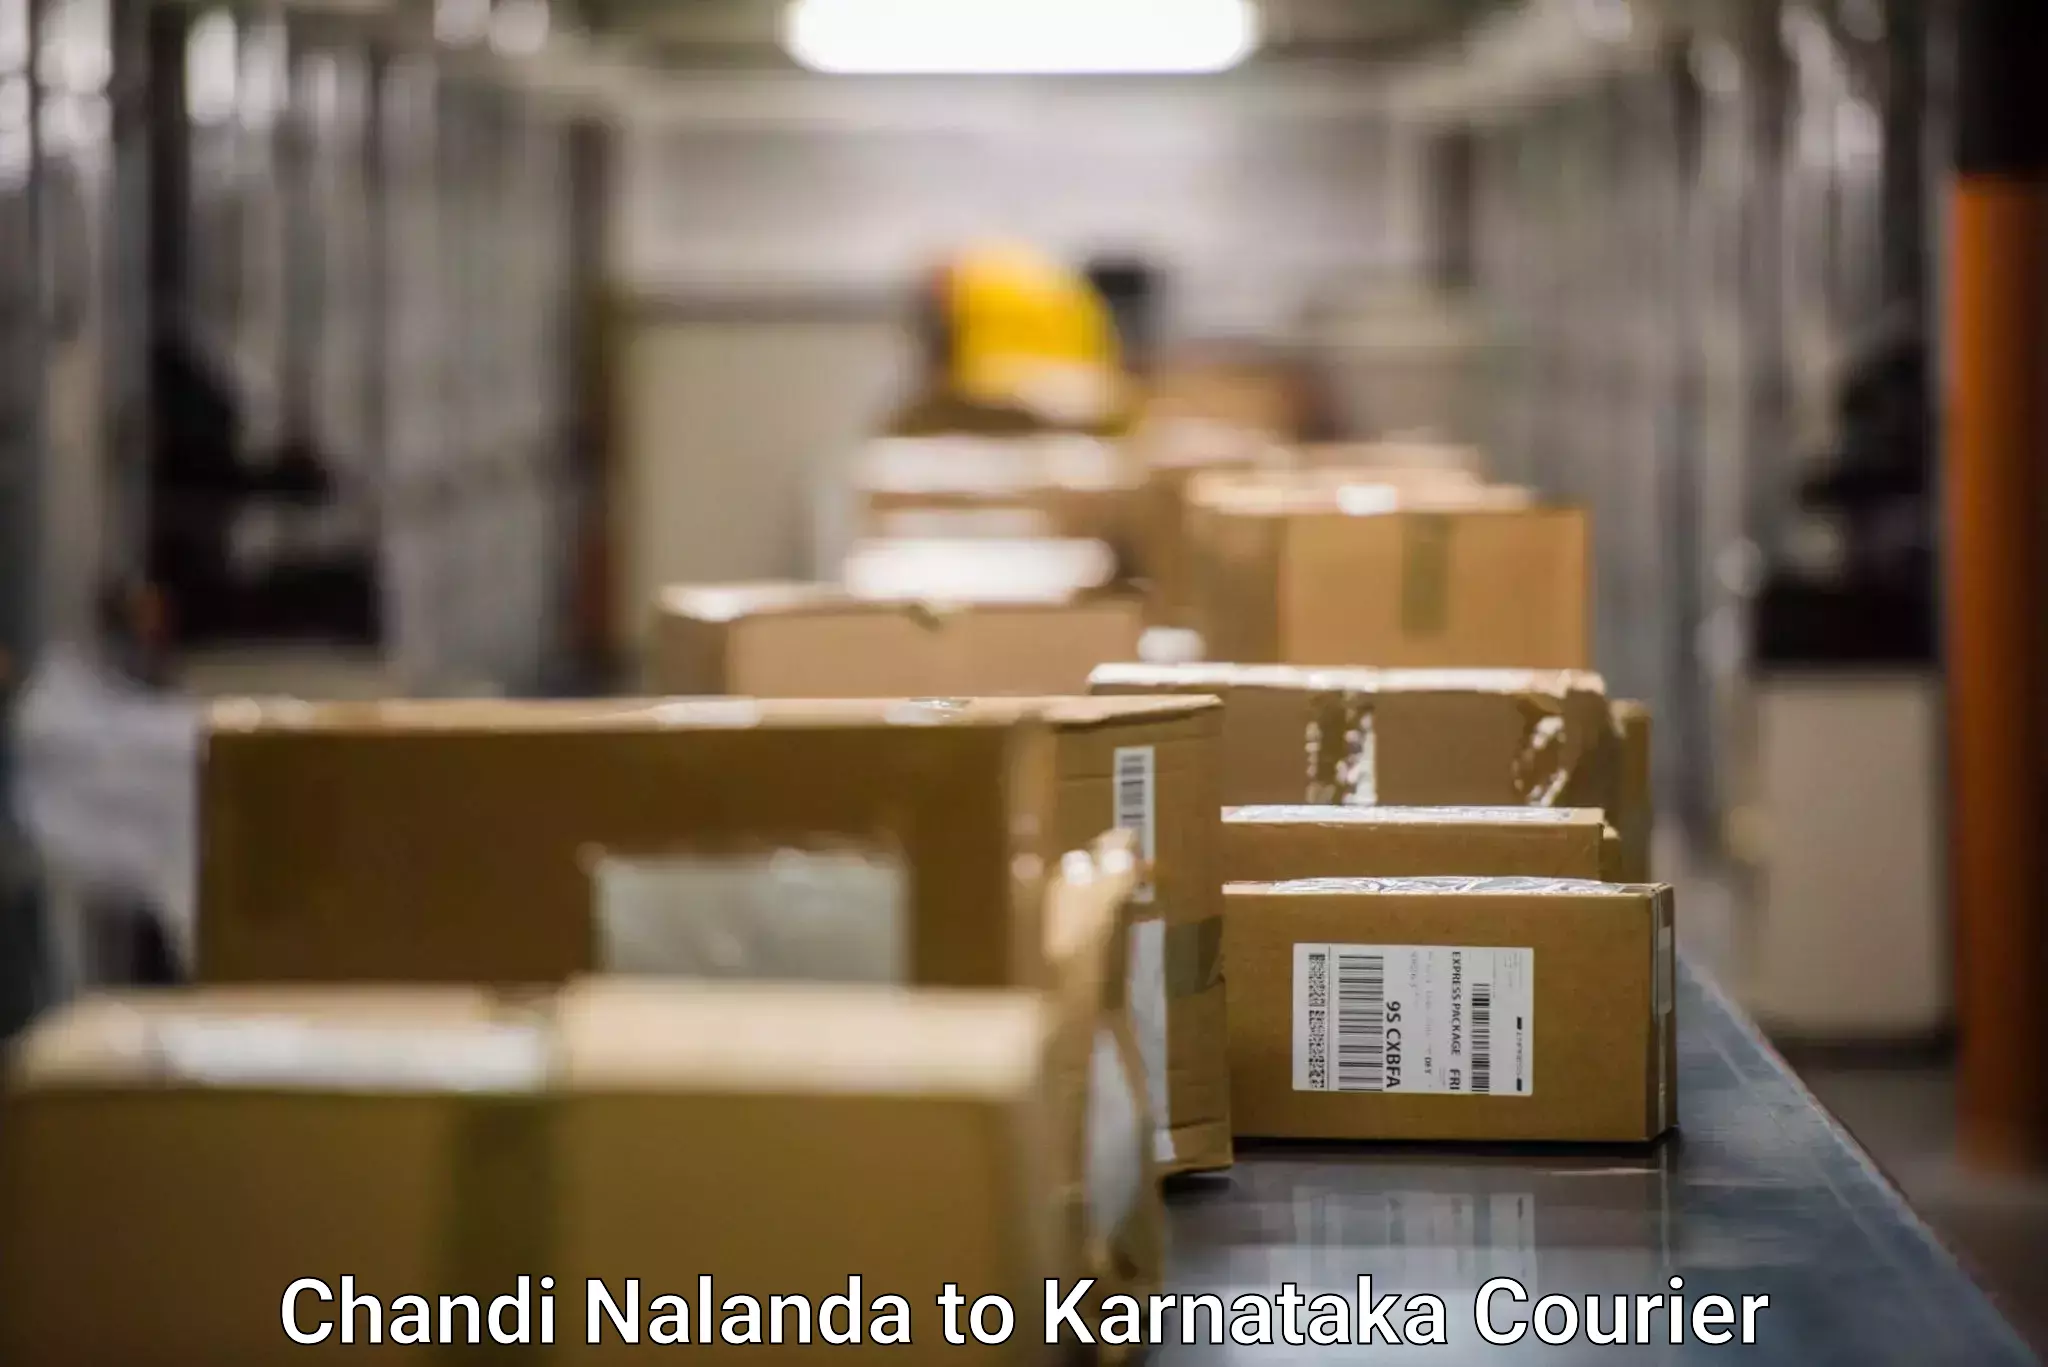 Express delivery network Chandi Nalanda to Mangalore Port